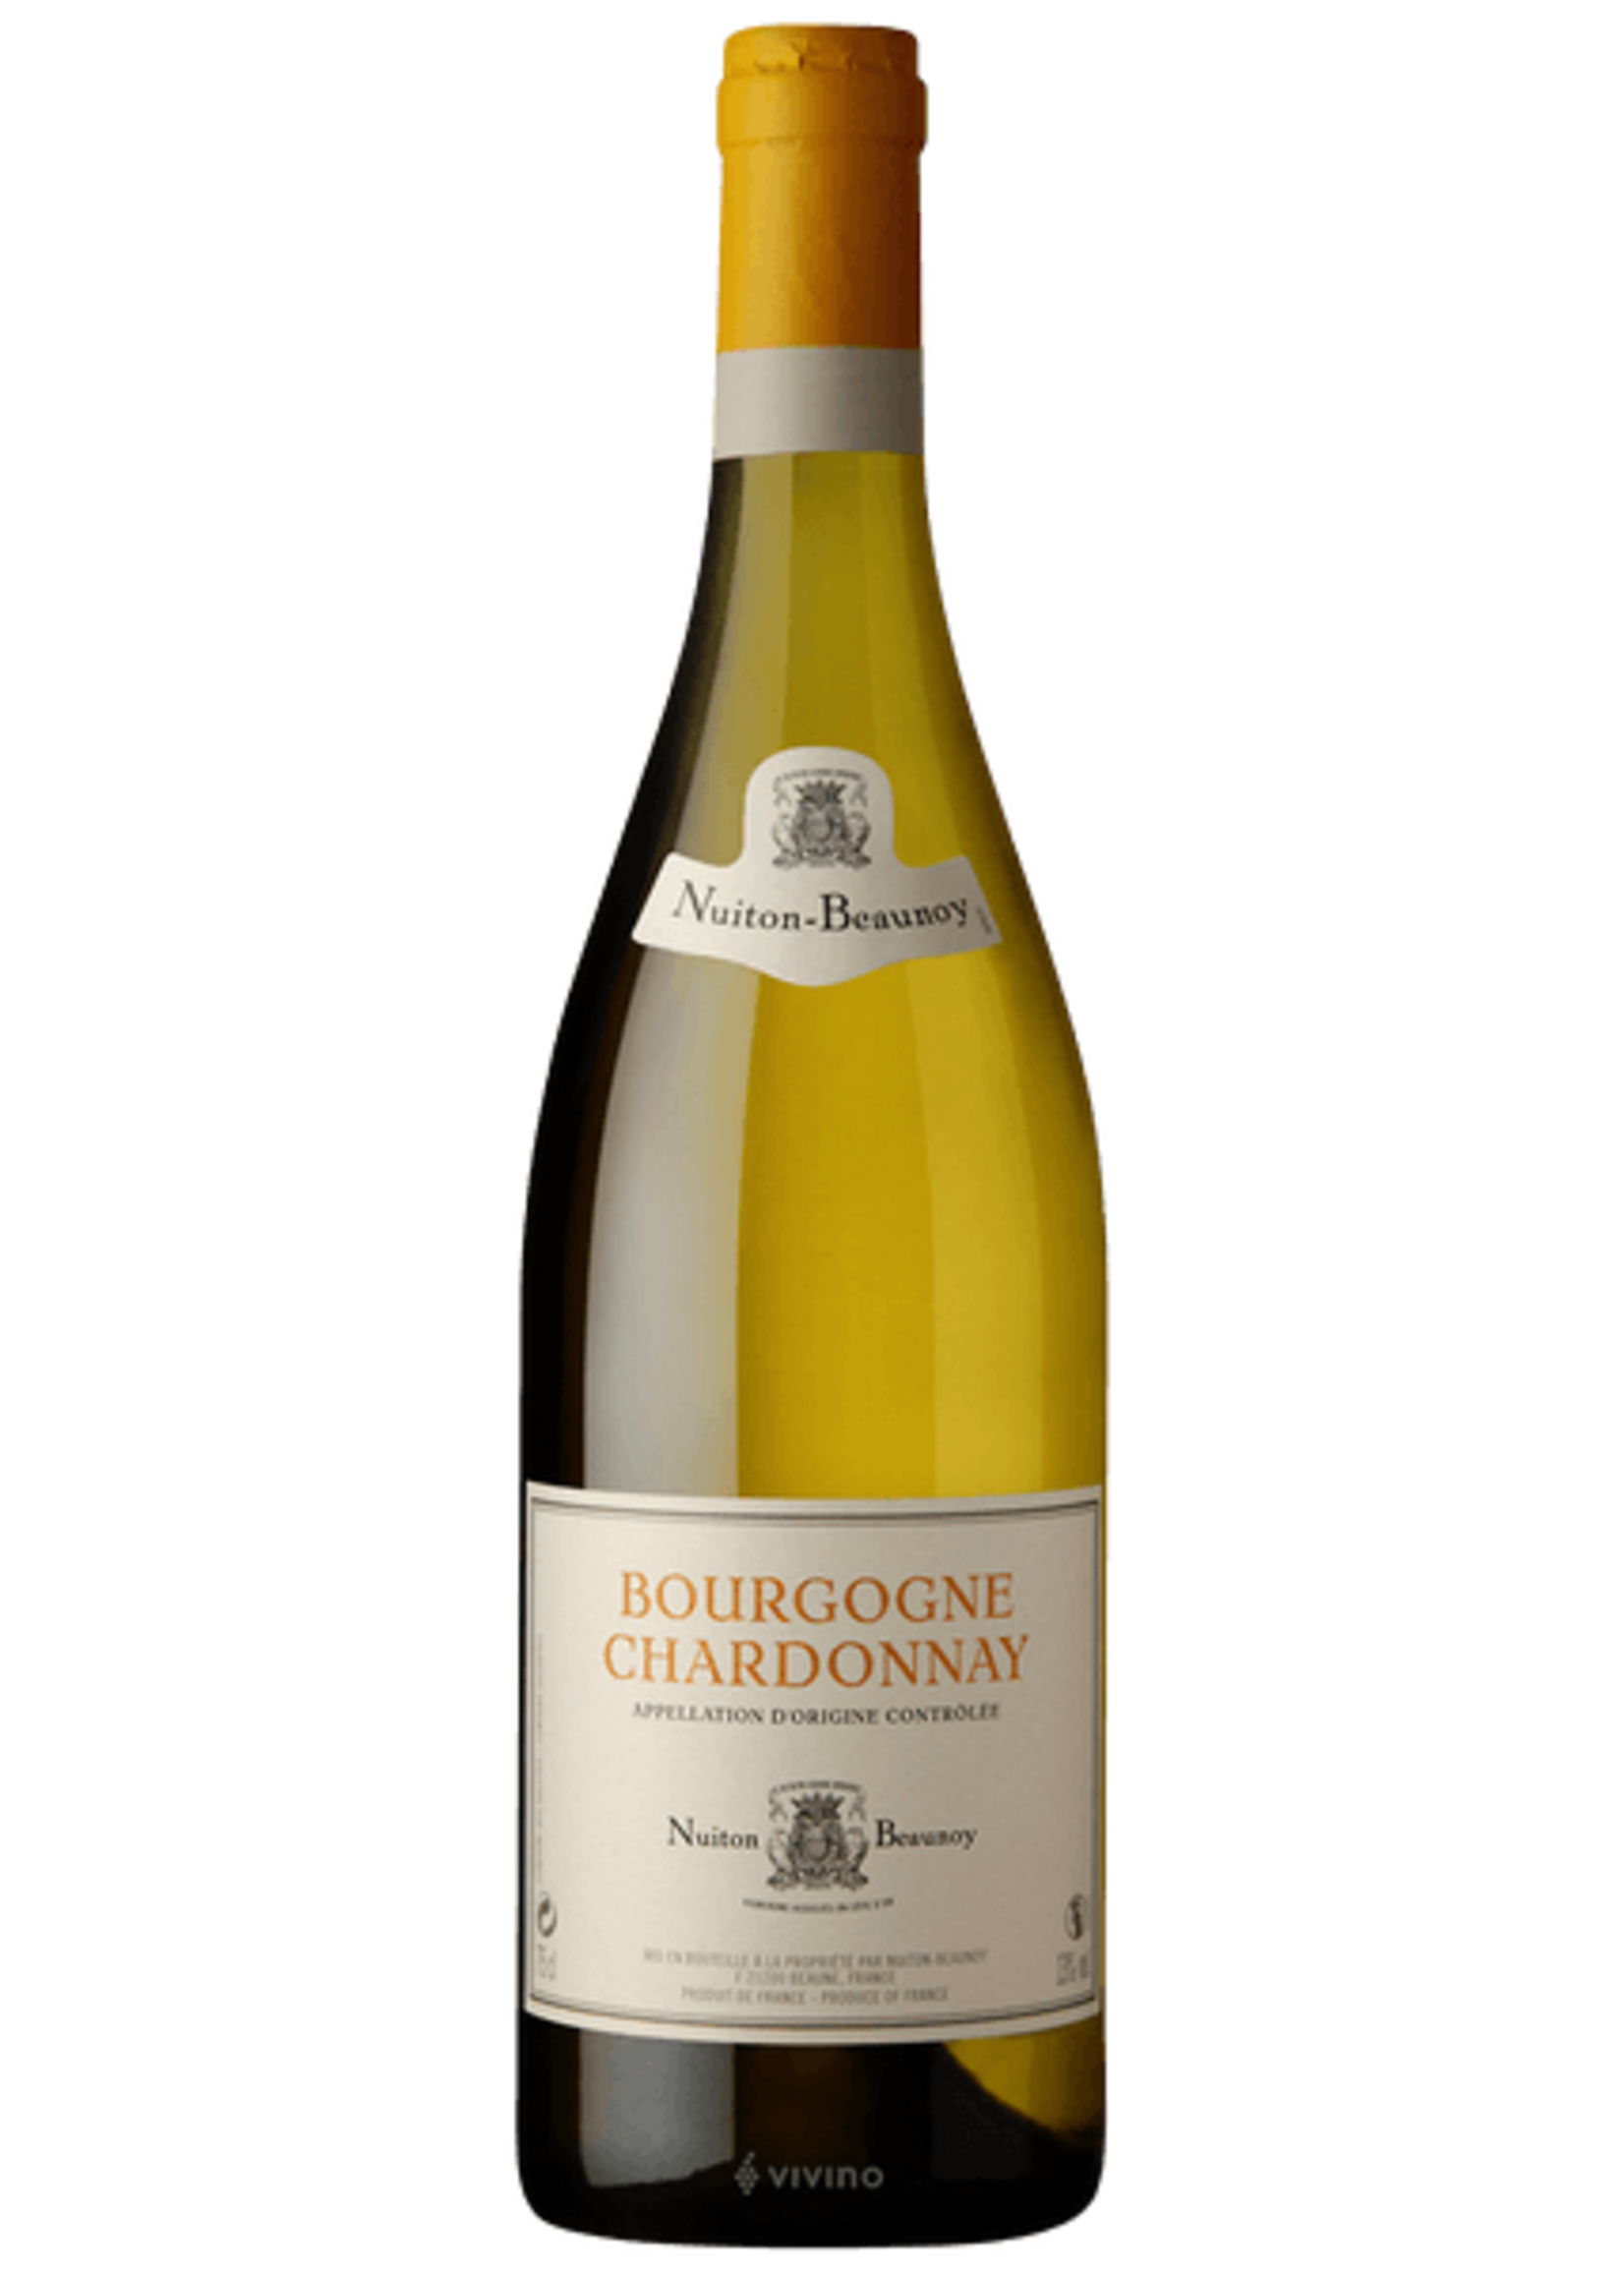 Nuiton-Beaunoy Nuiton-Beaunoy / Bourgogne Chardonnay 2021 / 750mL